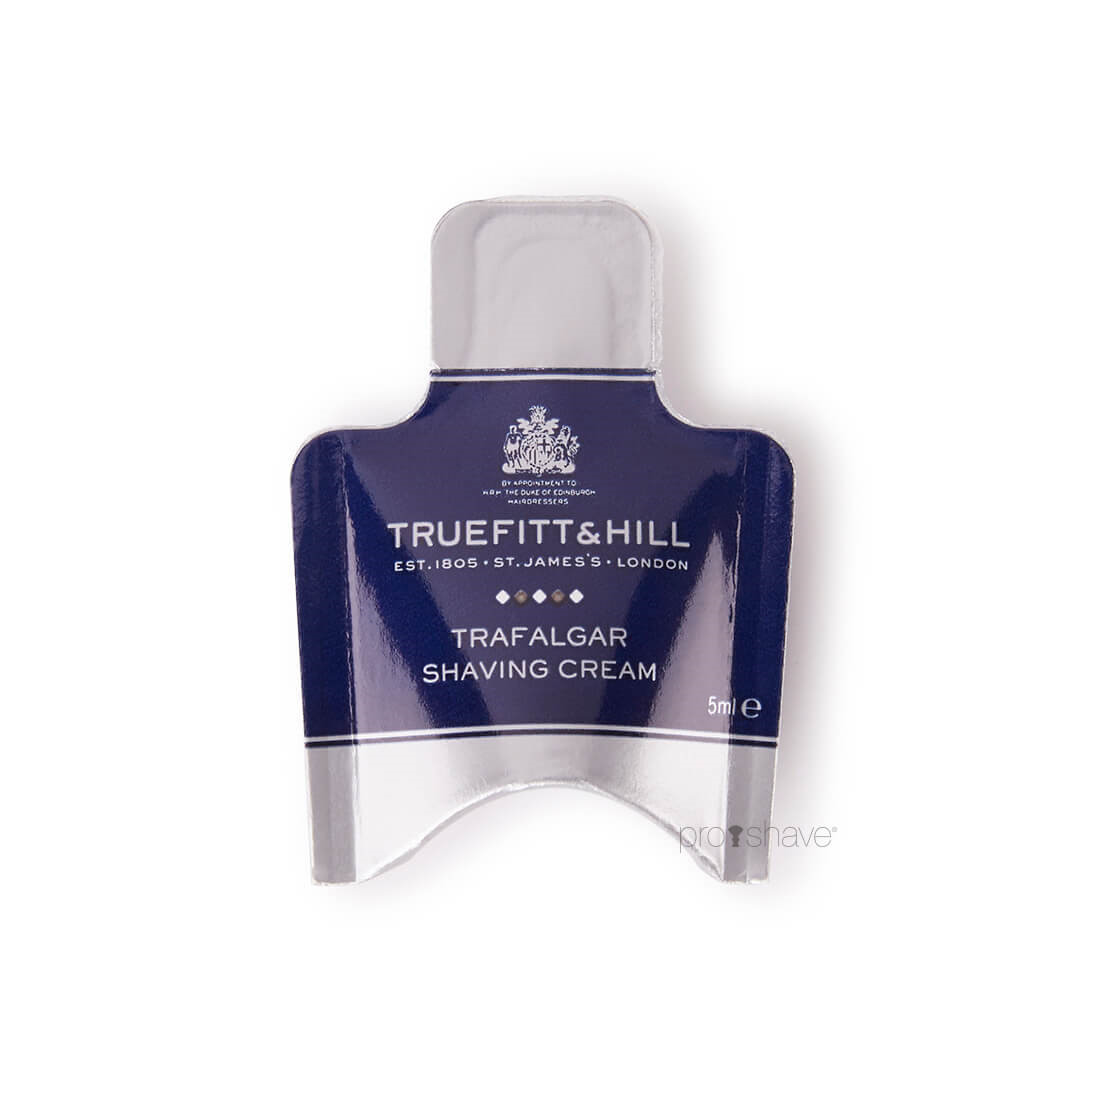 Truefitt & Hill Trafalgar Shaving Cream Sample Pack, 5 ml.